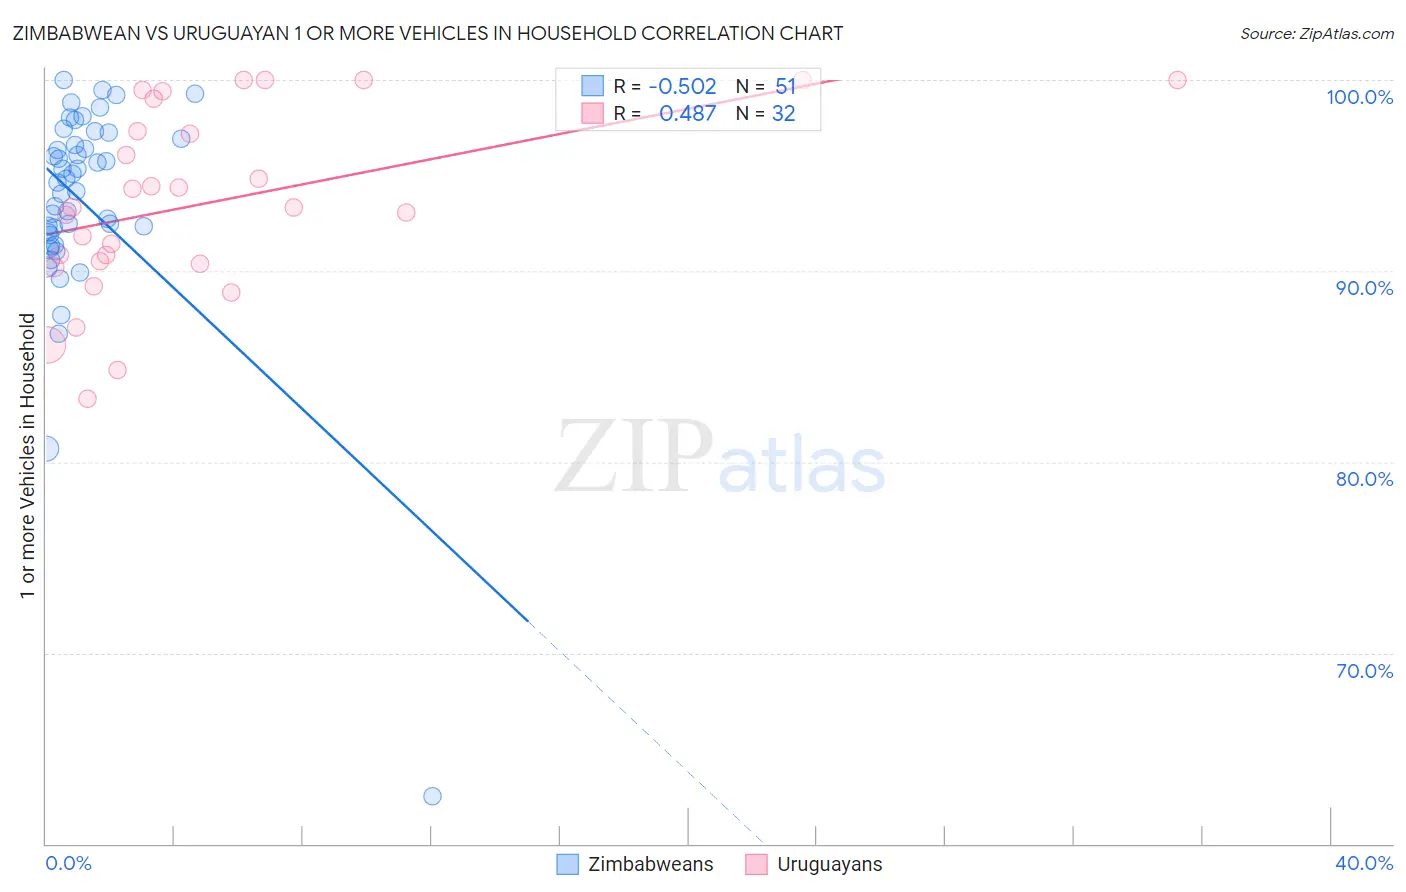 Zimbabwean vs Uruguayan 1 or more Vehicles in Household